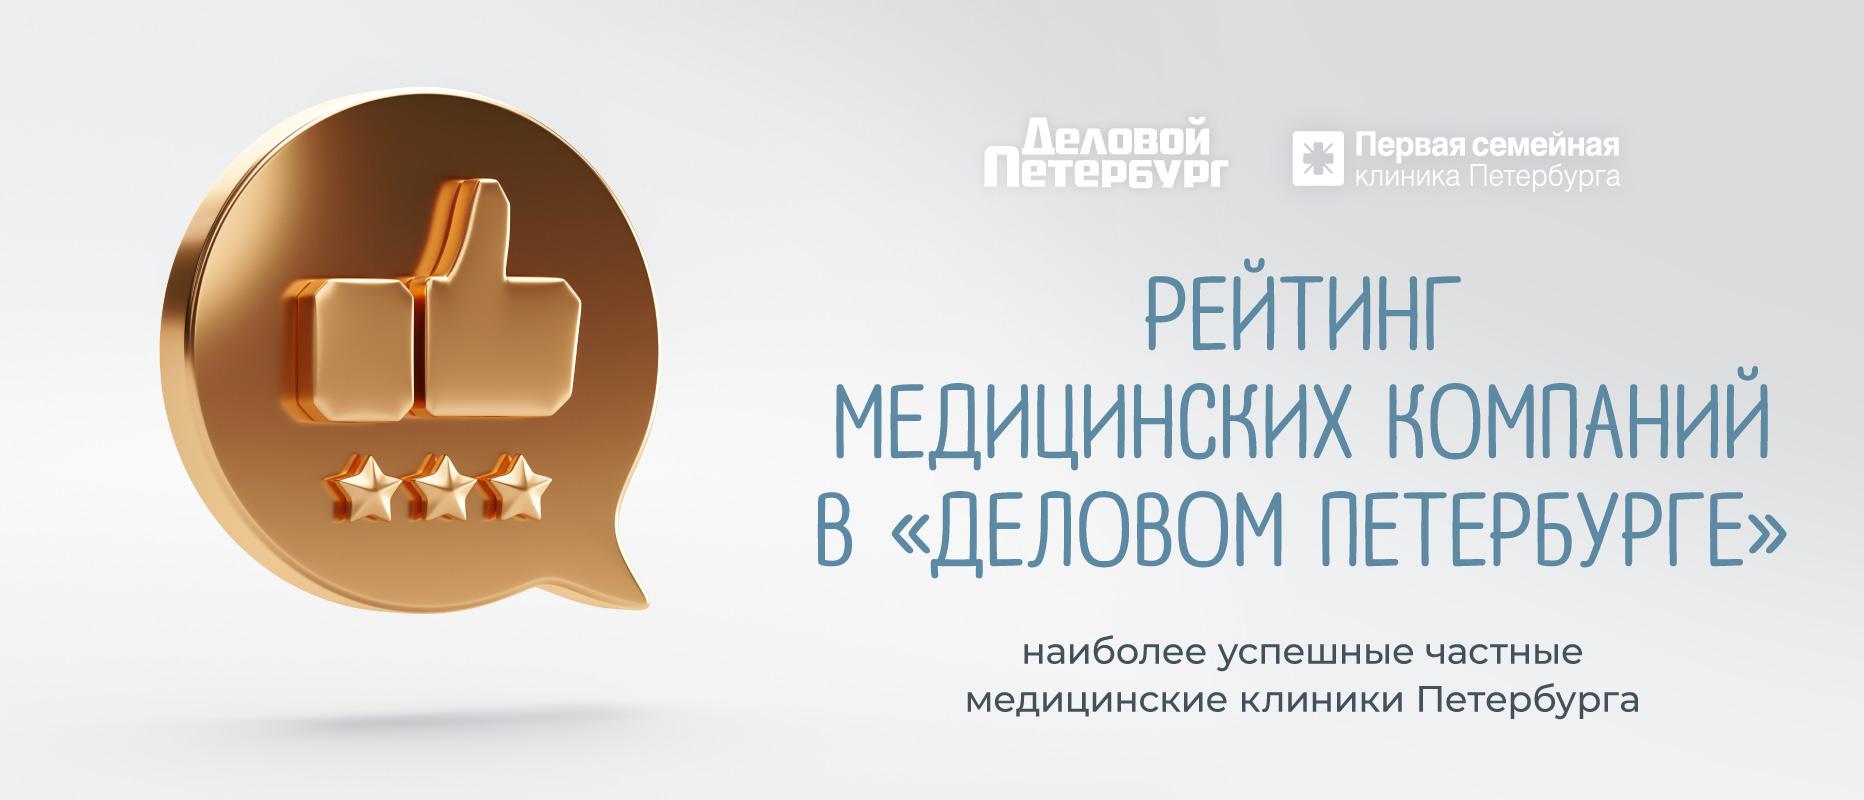 Медицинский холдинг "Первая семейная клиника Петербурга" стал лауреатом рейтинга среди частных медицинских клиник города!